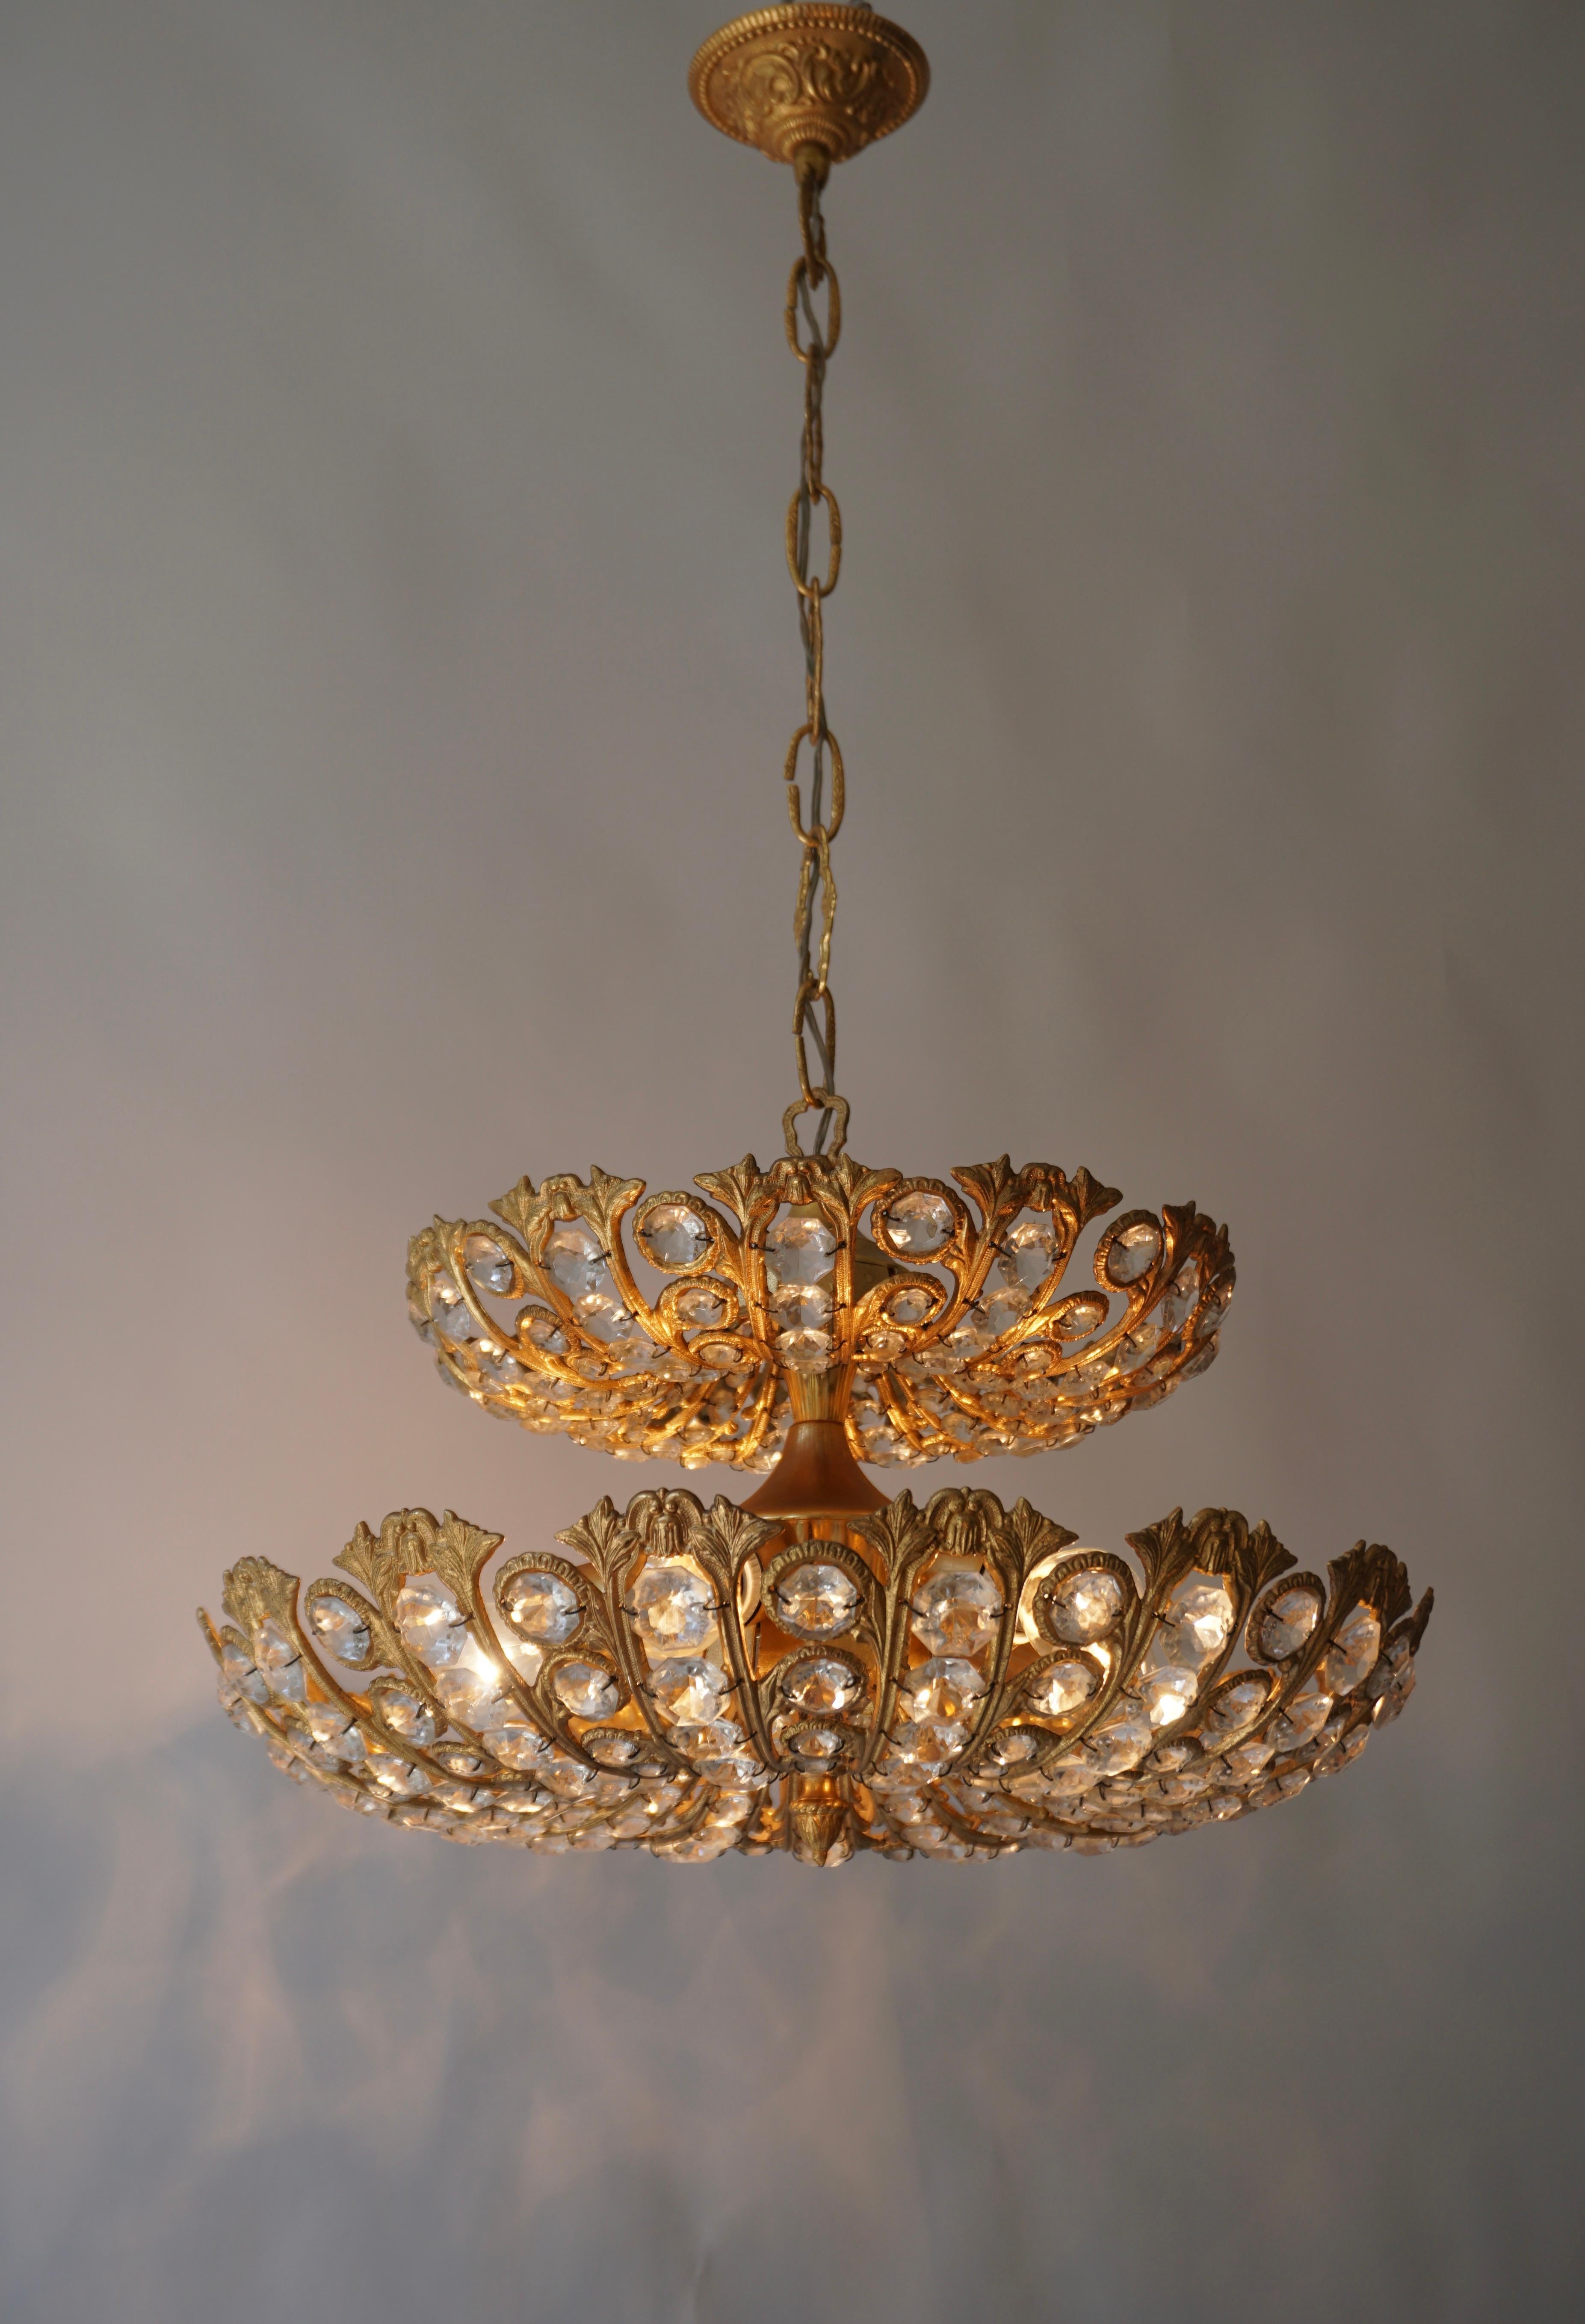 Rare et grande lampe Palwa conçue par Ernest Palm et produite dans les années 60 à Barcelone. 

Structure dorée composée de cristaux taillés en parfait état de conservation.Objet design rare qui illuminera parfaitement votre intérieur.

Diamètre 19